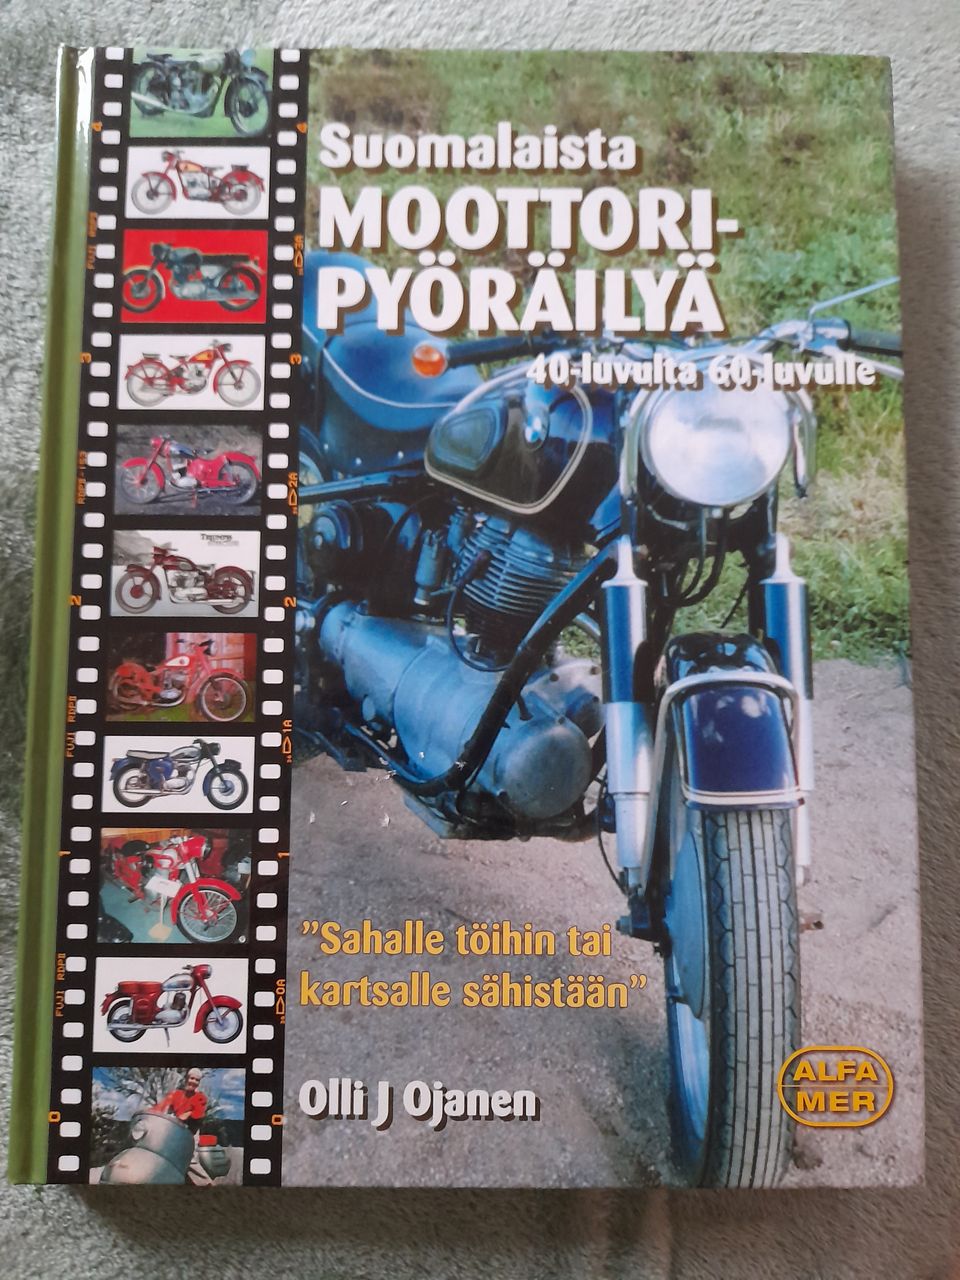 Moottoripyöräilyä 40 luvulta 60 luvulle